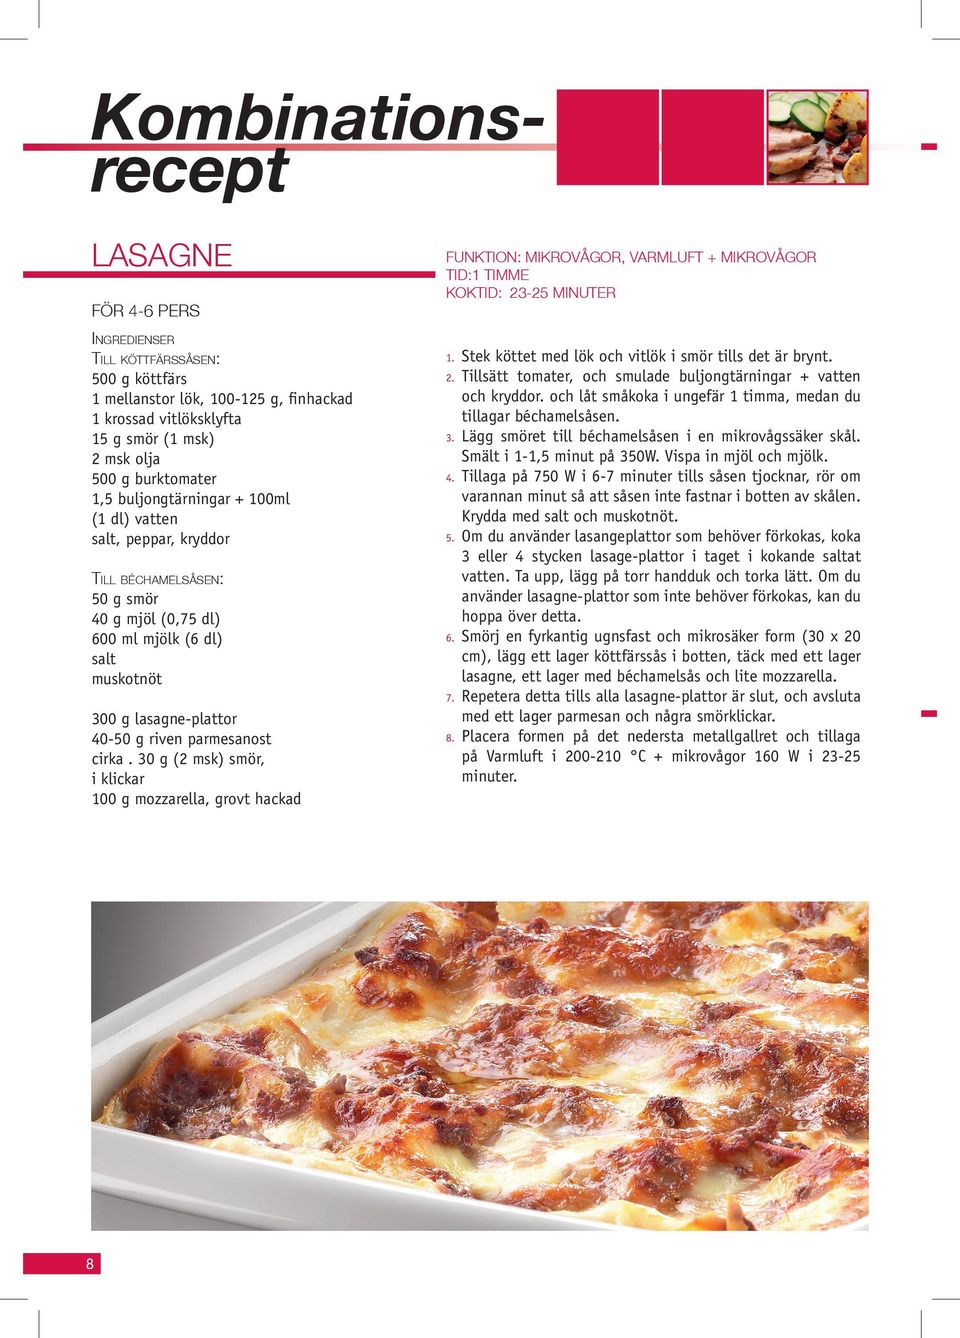 TIMME KOKTID: 23-25 MINUTER 6. 7. 300 g lasagne-plattor 40-50 g riven parmesanost cirka. 30 g (2 msk) smör, i klickar 100 g mozzarella, grovt hackad 8 8.